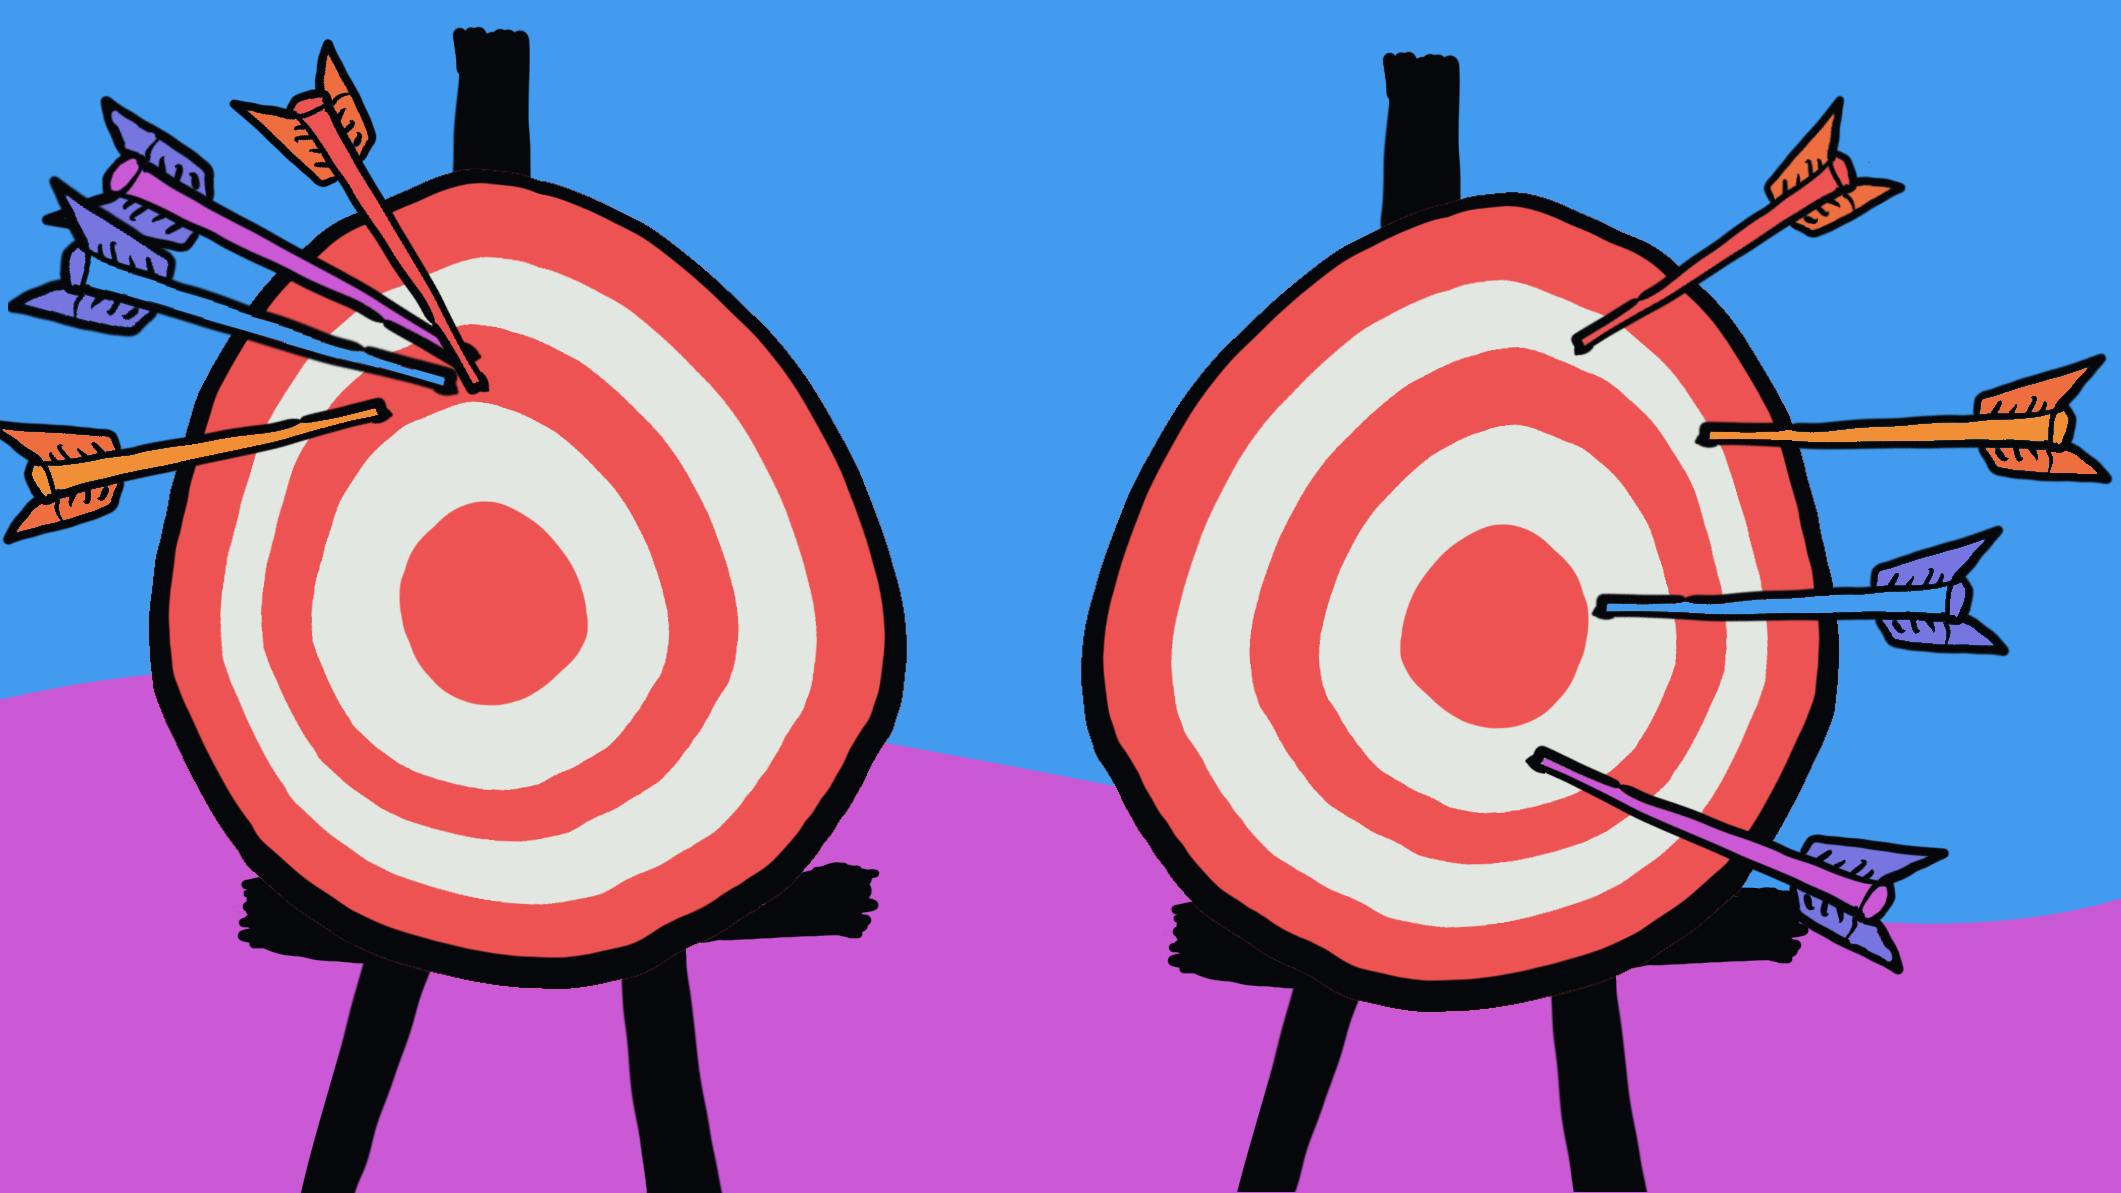 2 archery target board